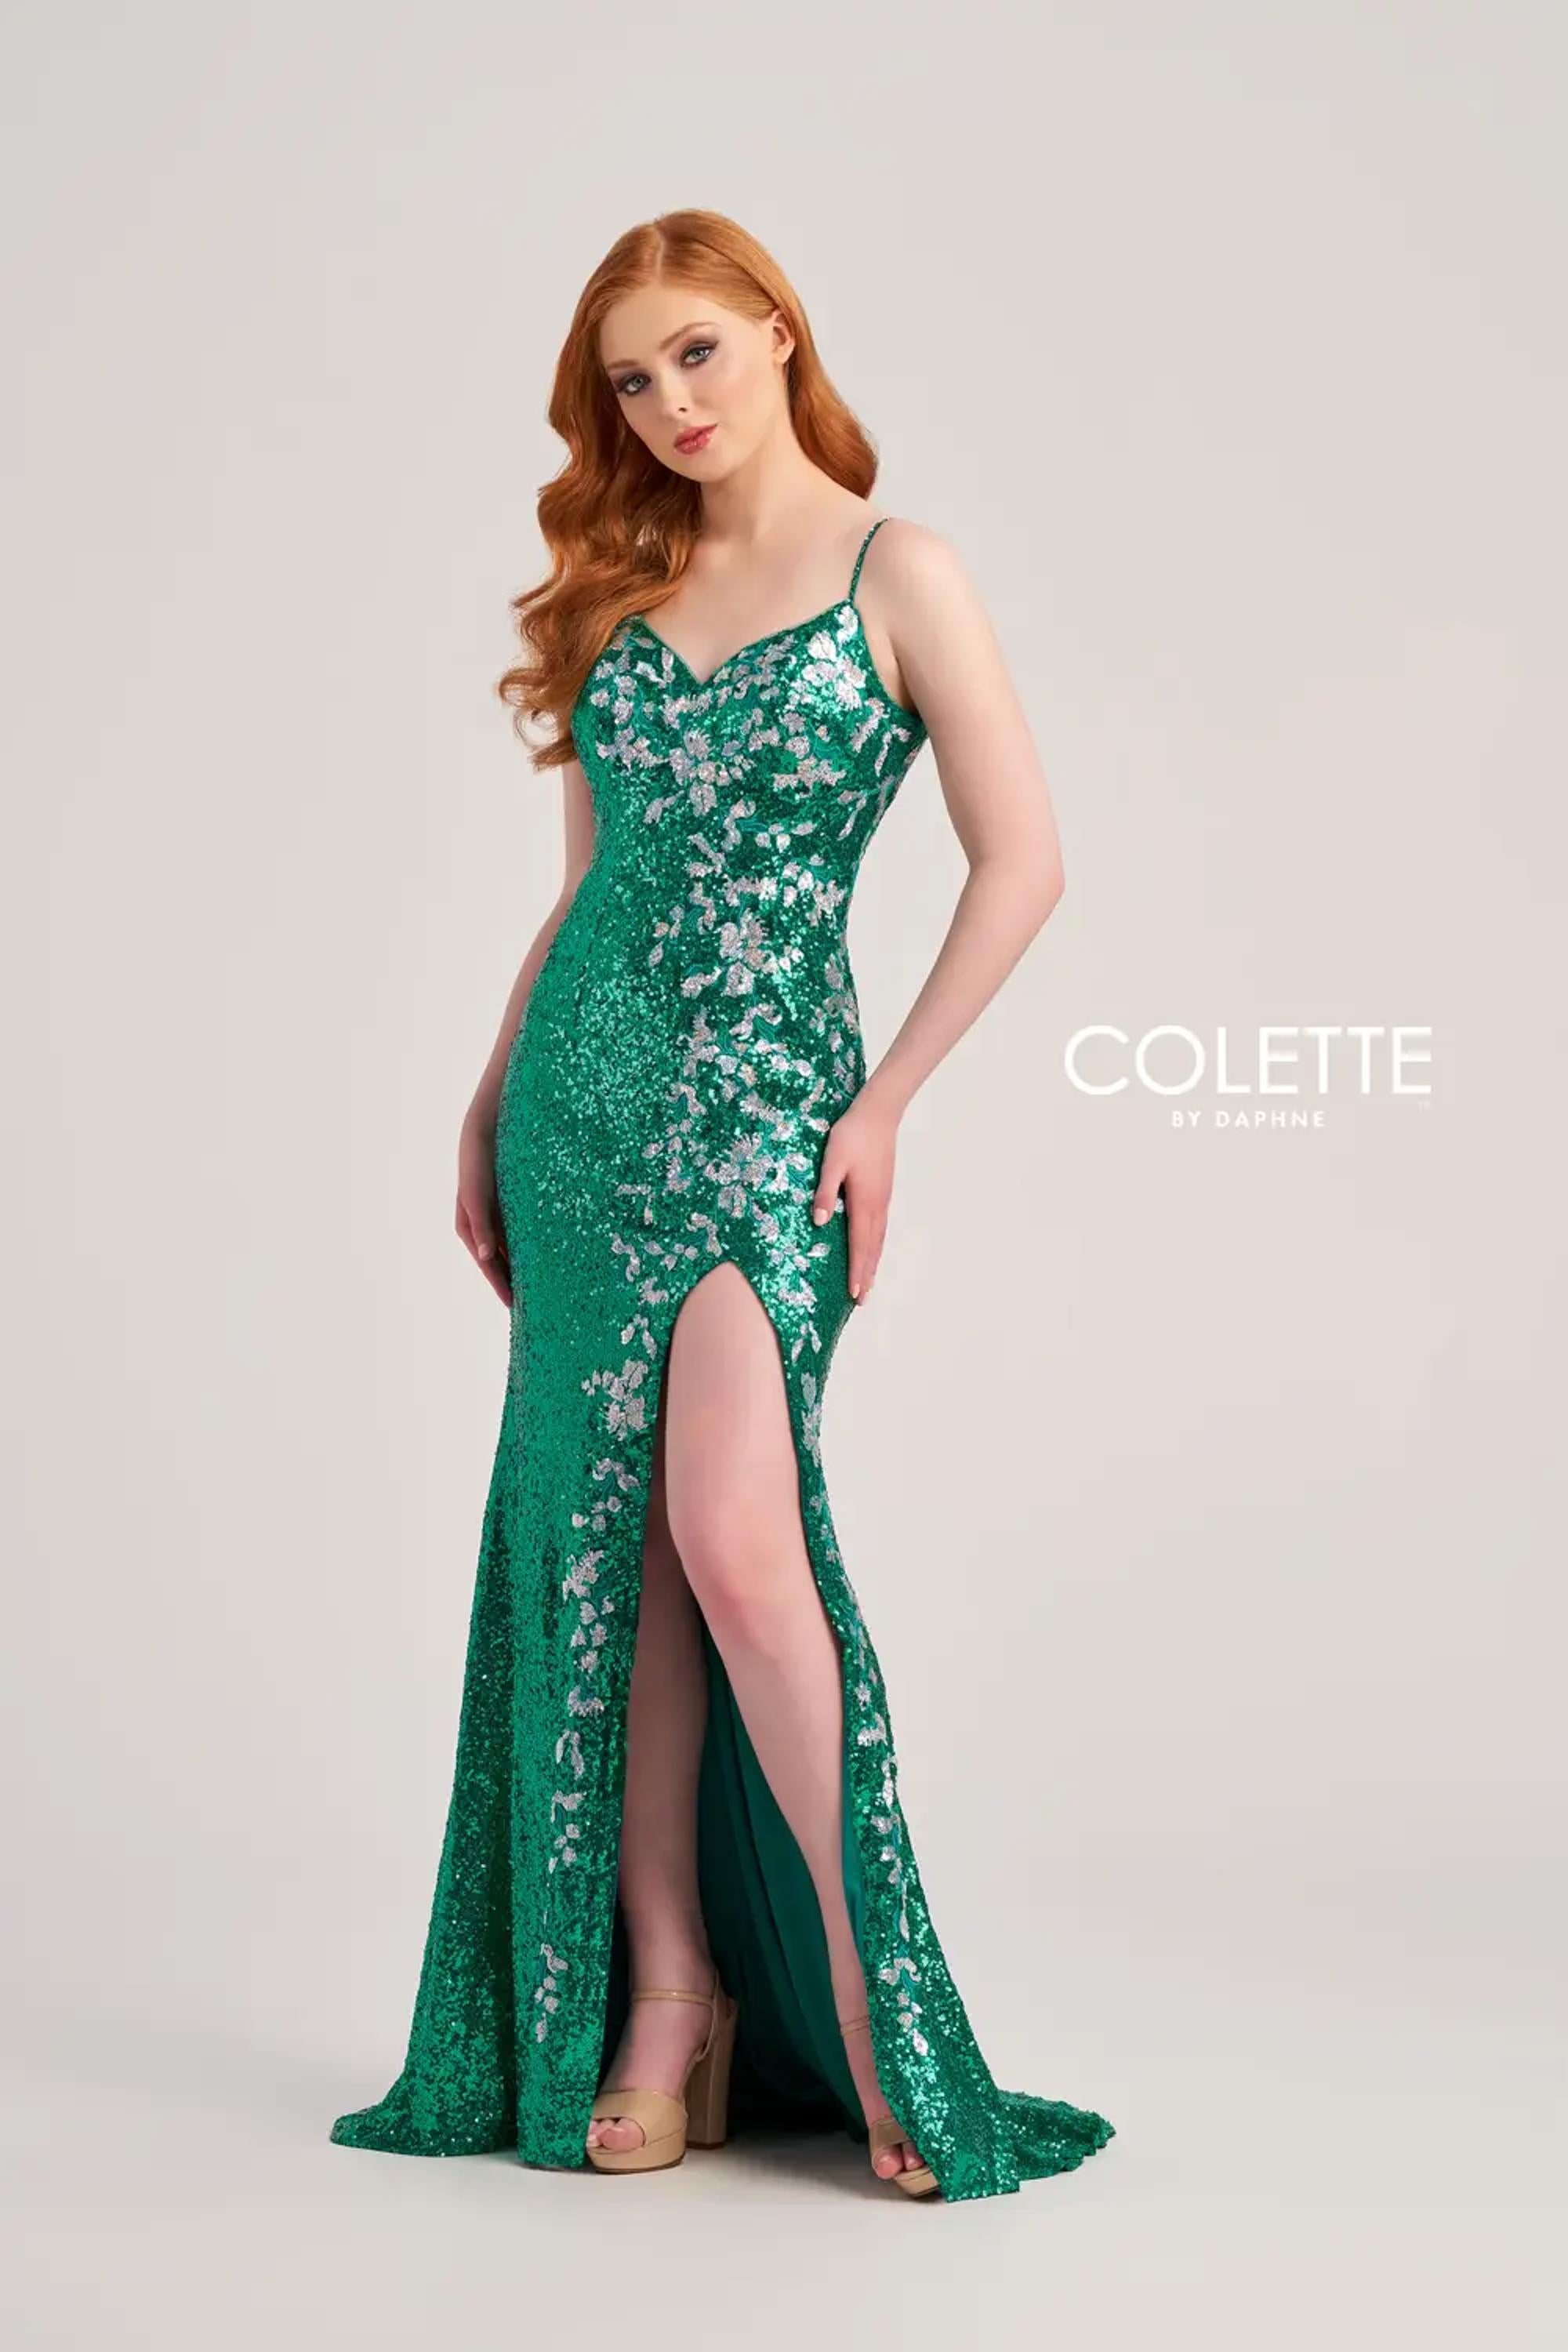 Colette CL5196